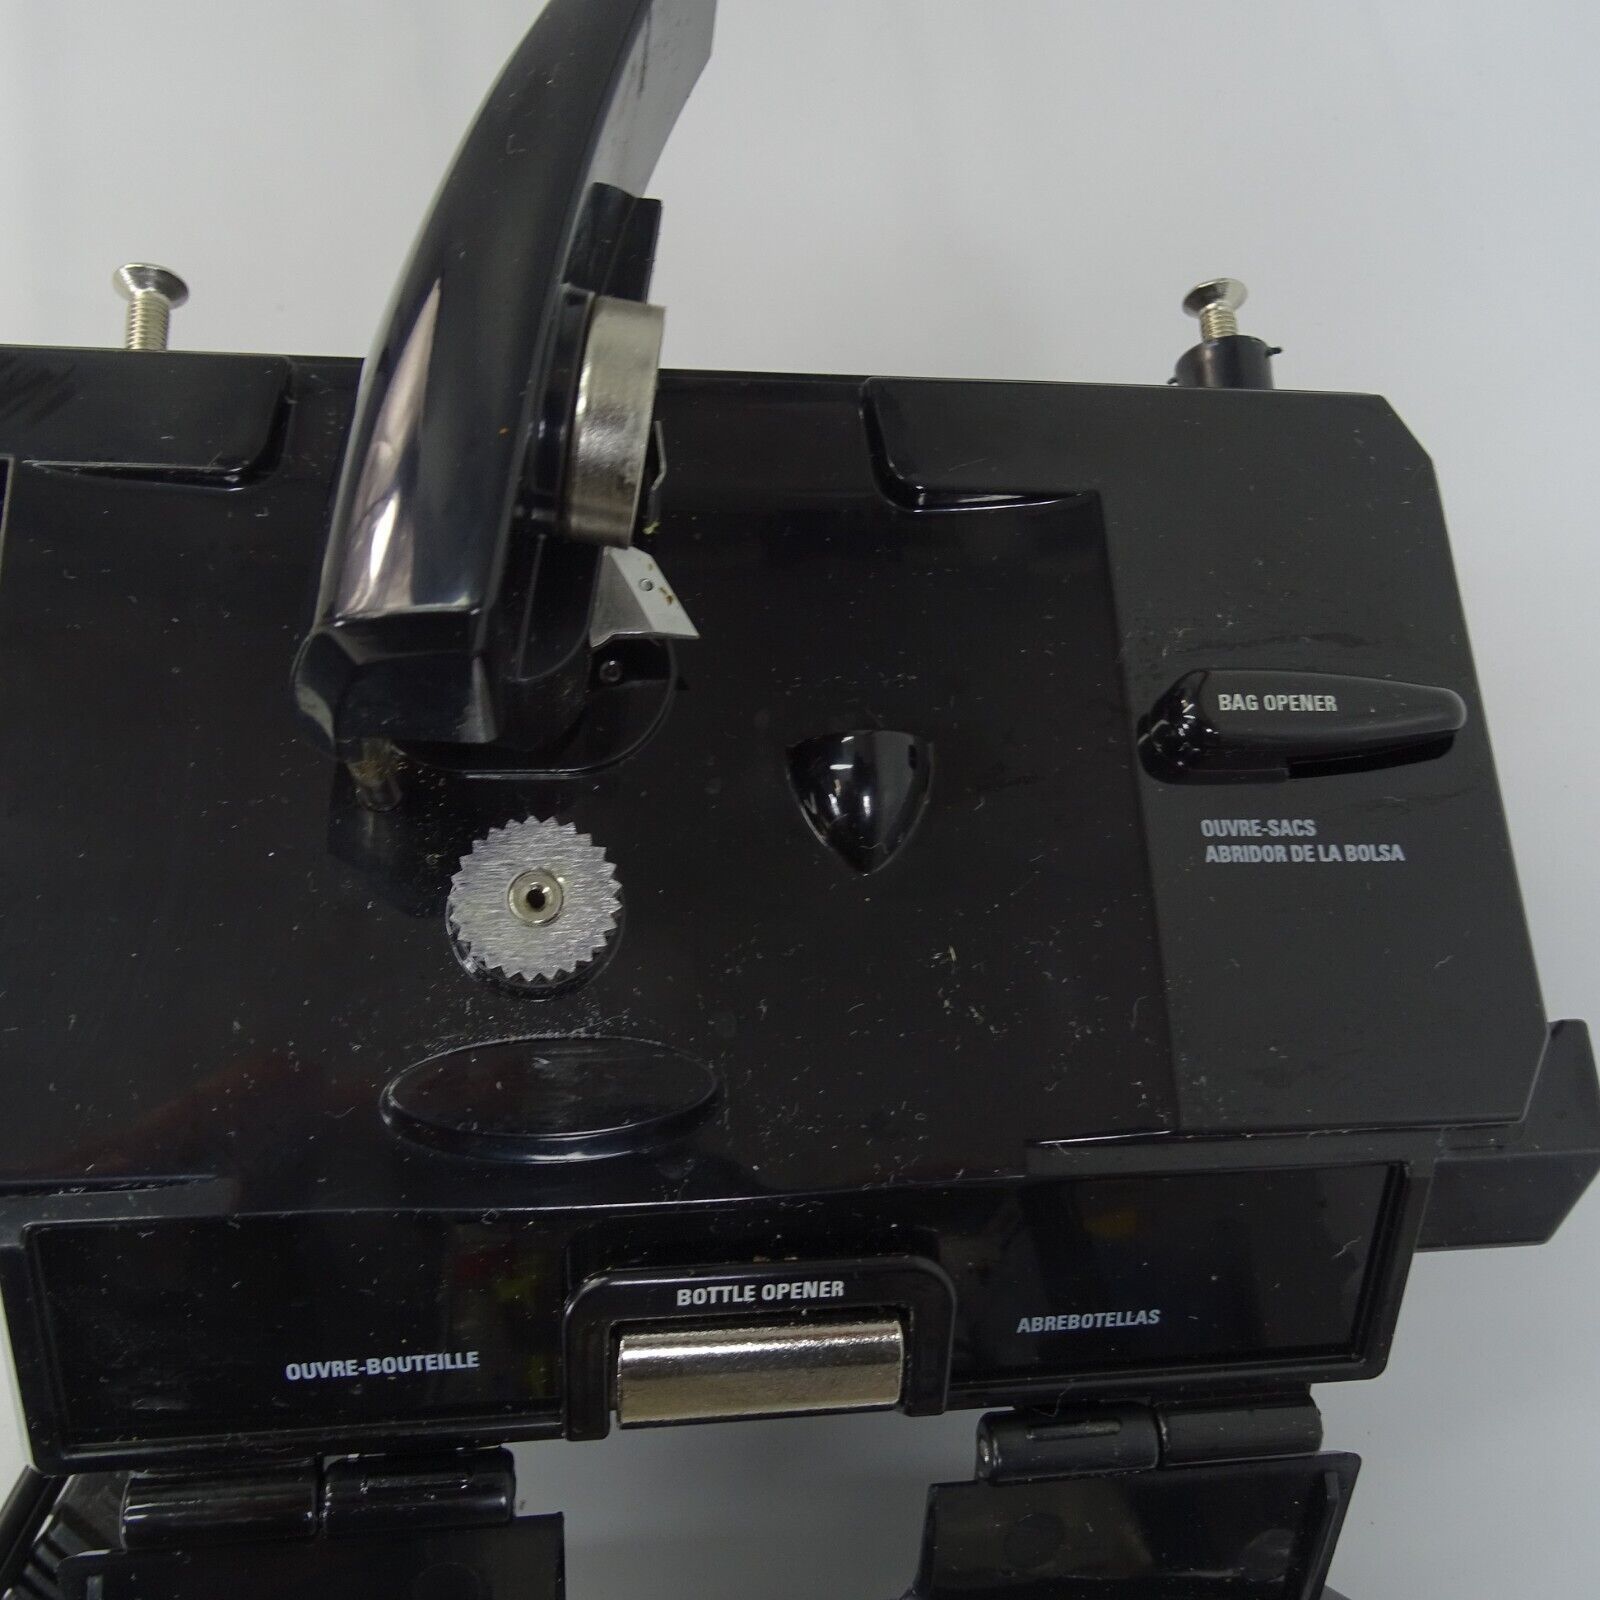 Vintage Black & Decker Spacemaker Plus Under Cabinet Can Opener Knife  Sharpener